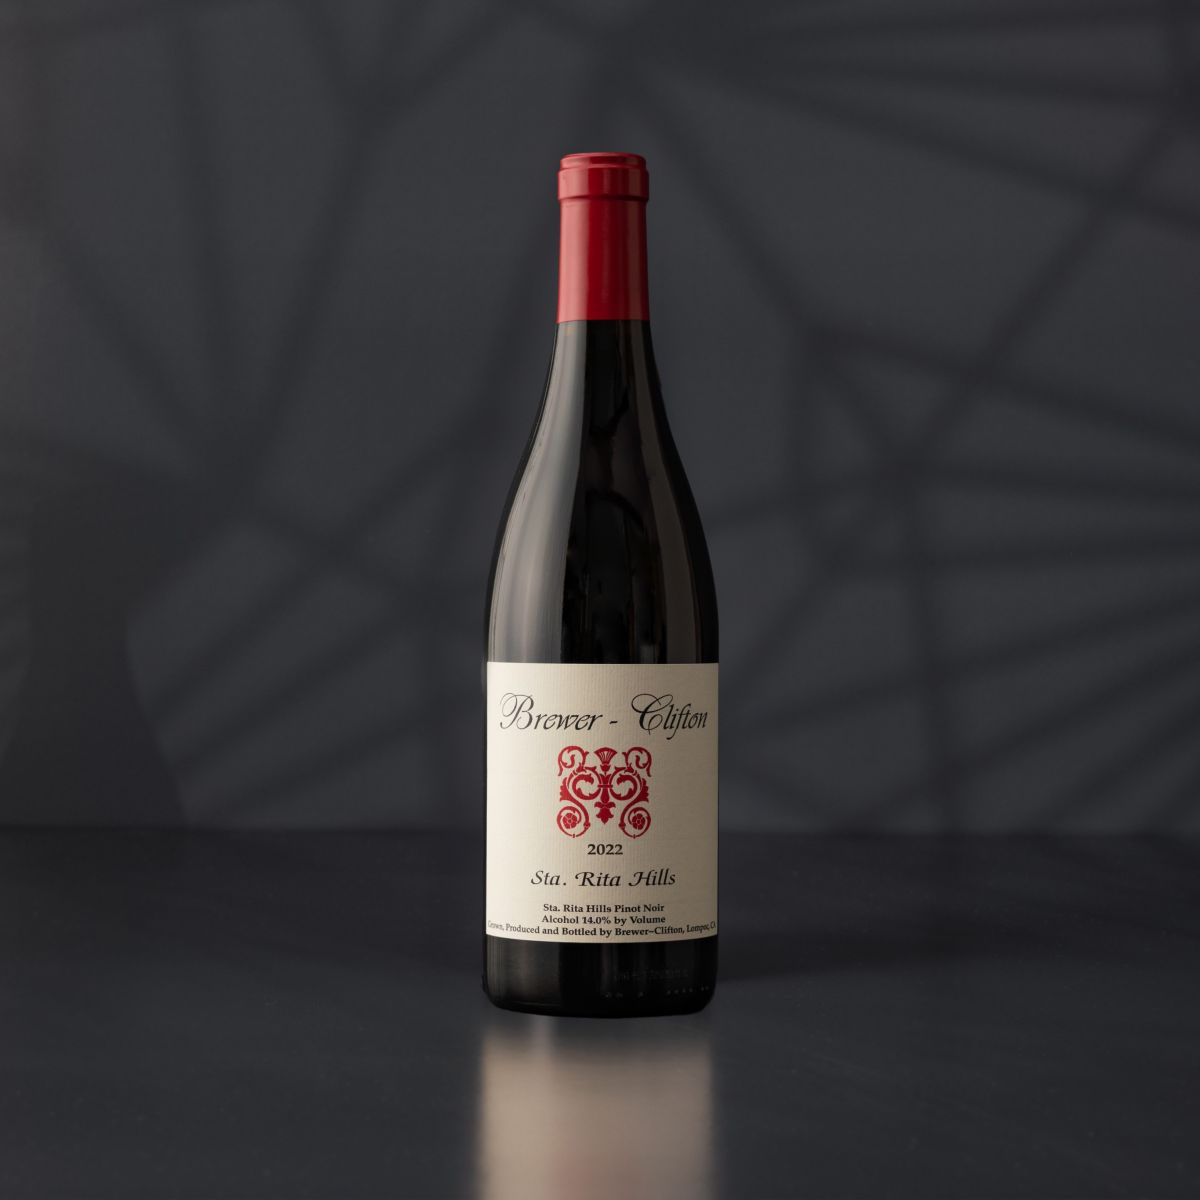 A bottle of 2022 Sta. Rita Hills Pinot Noir